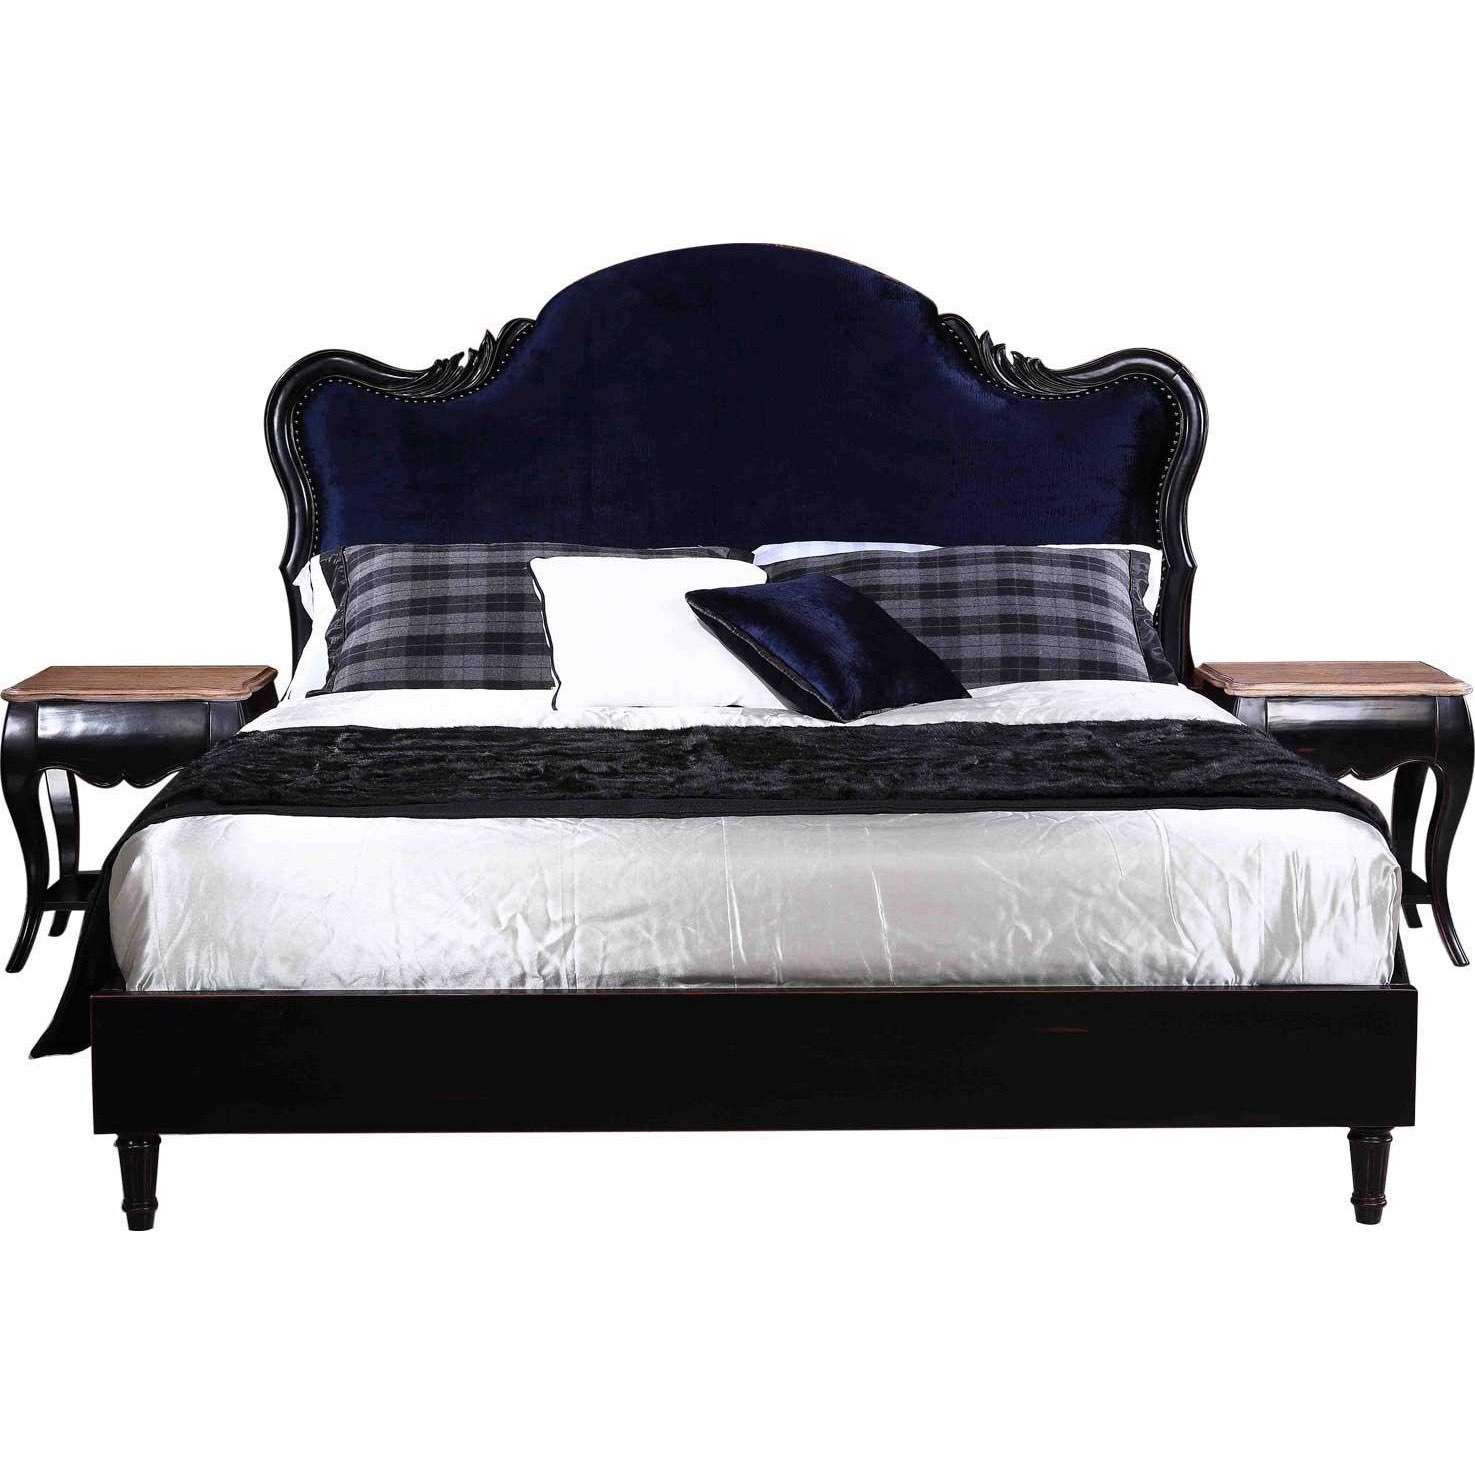 wood carved headboard|bedroom furniture|upholstered bed